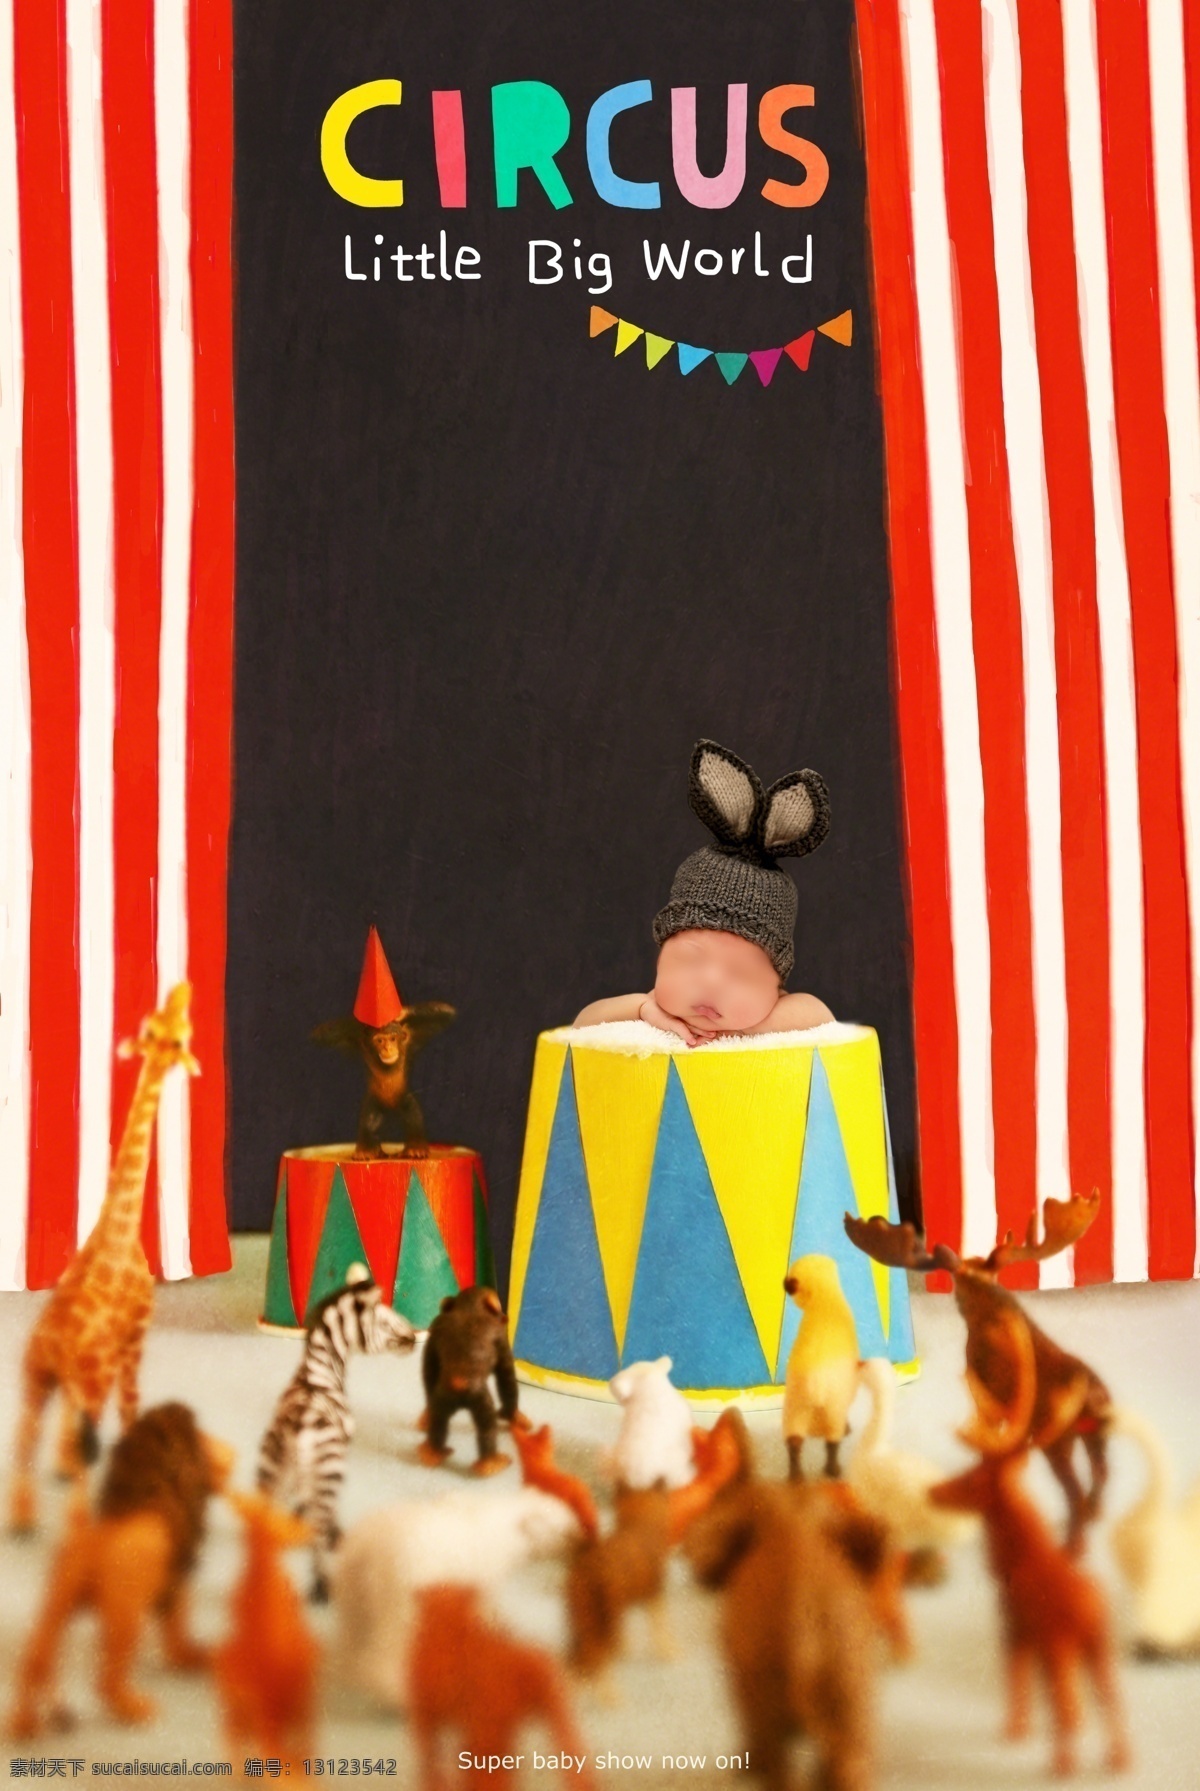 马戏团 梦幻 空间 海报 创意 主题 招贴 广告 淘宝 易拉宝 鲜花 婴儿 睡觉 草地 大气 童话 世界 3d空间 可爱 萌萌哒